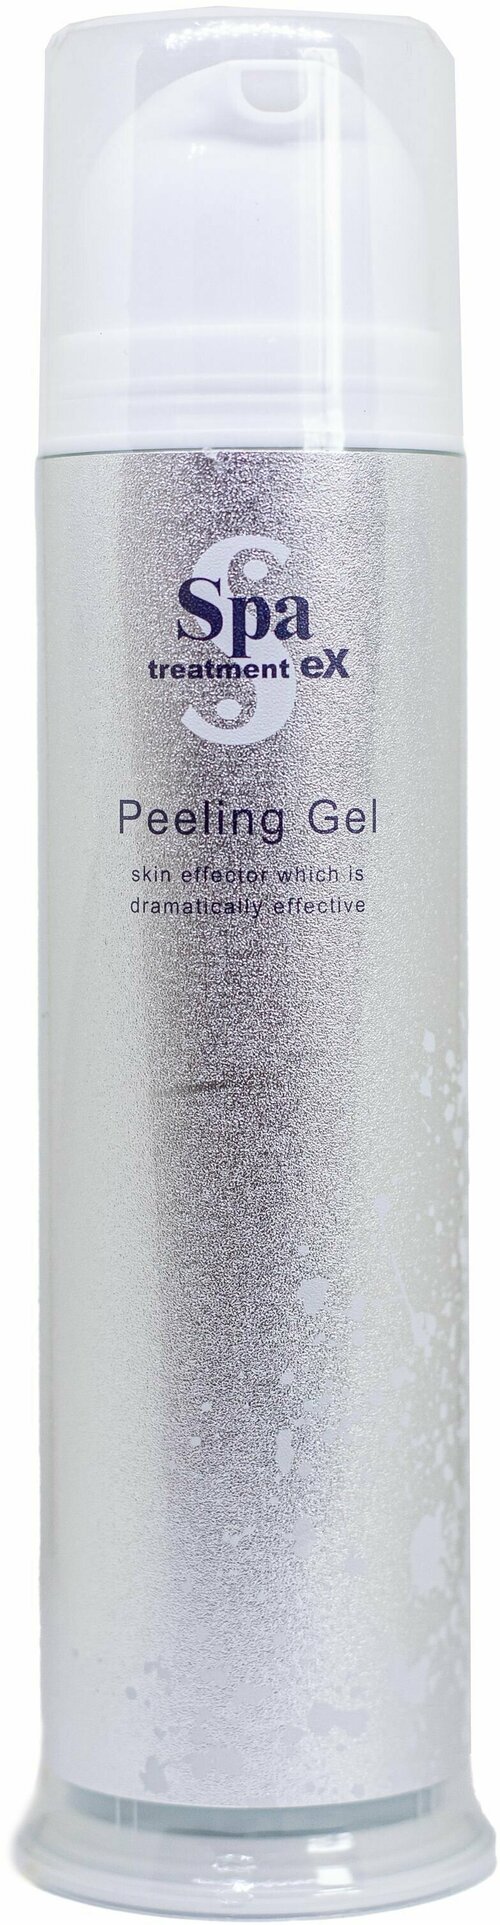 Пилинг-гель для глубокого очищения кожи Spa Treatment Ex Peeling Gel